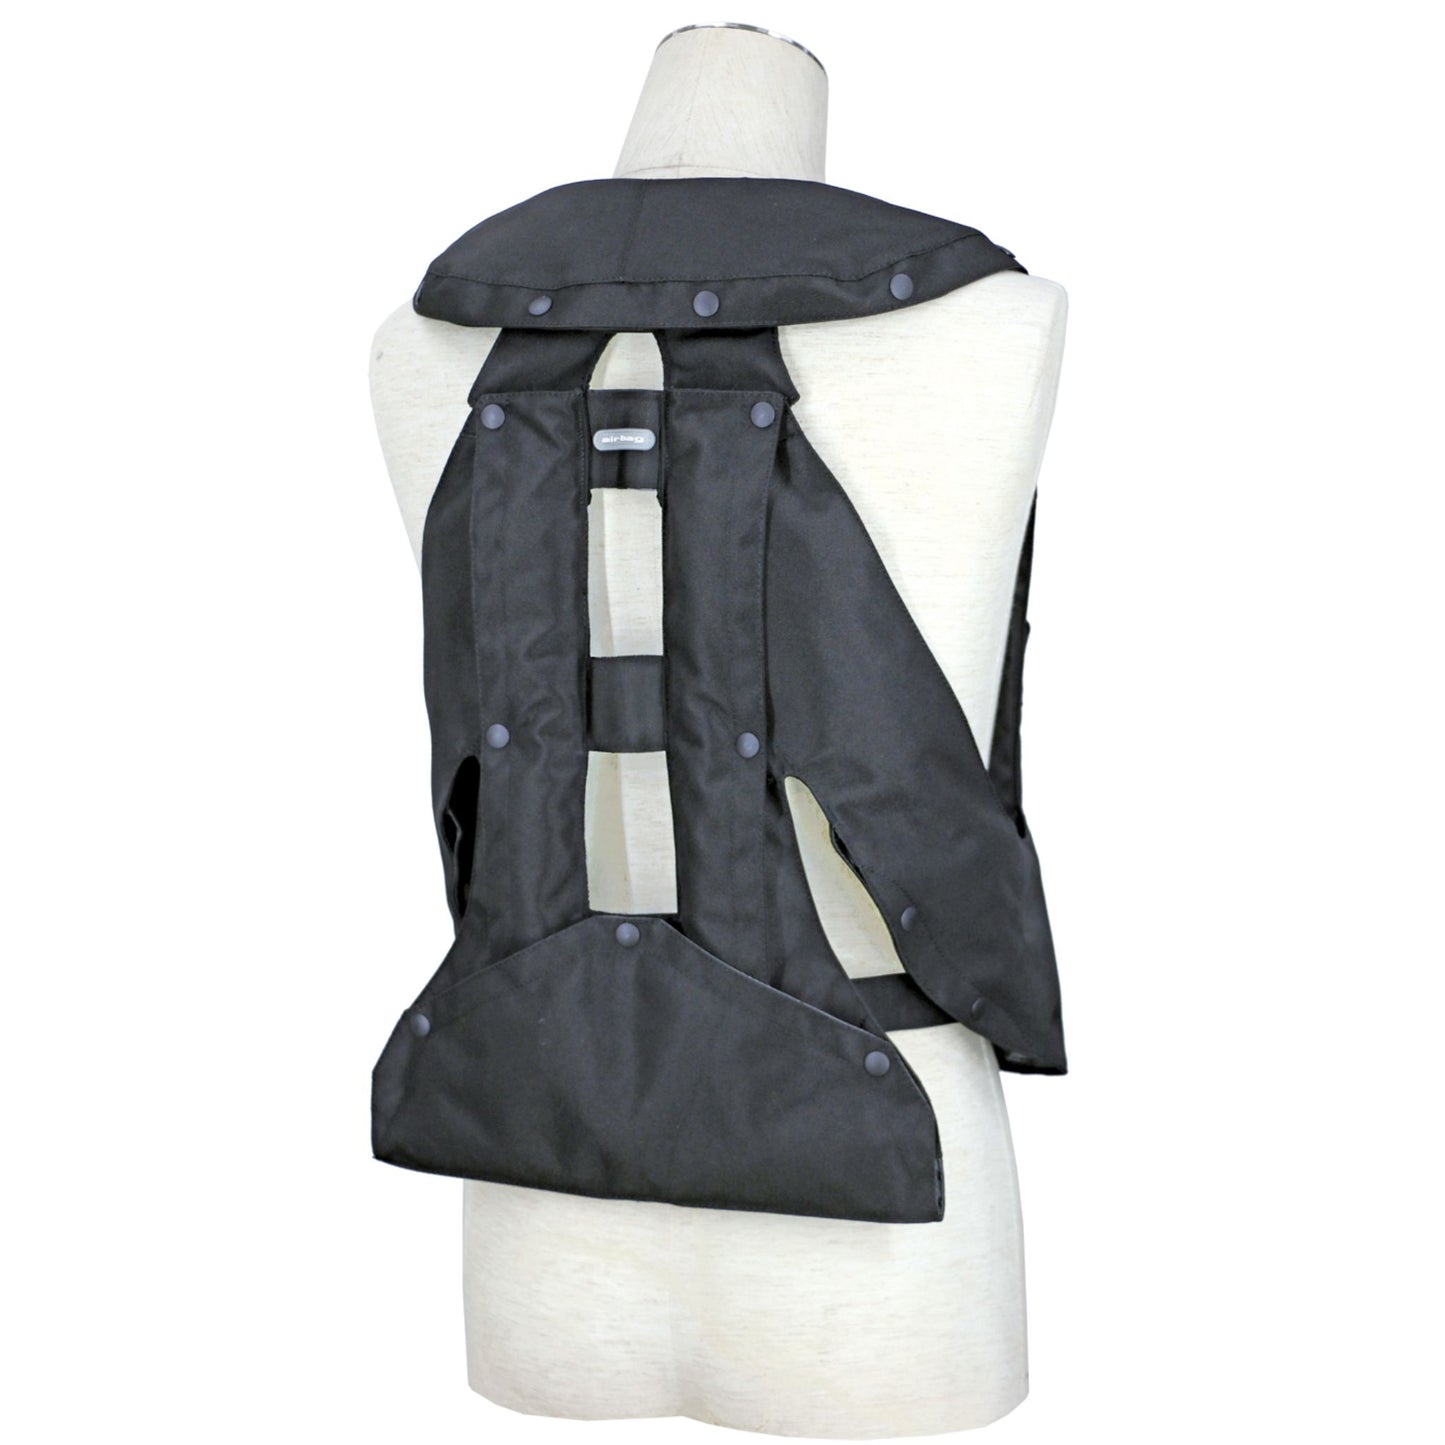 Hit-Air MLV3-H Inflatable Vest